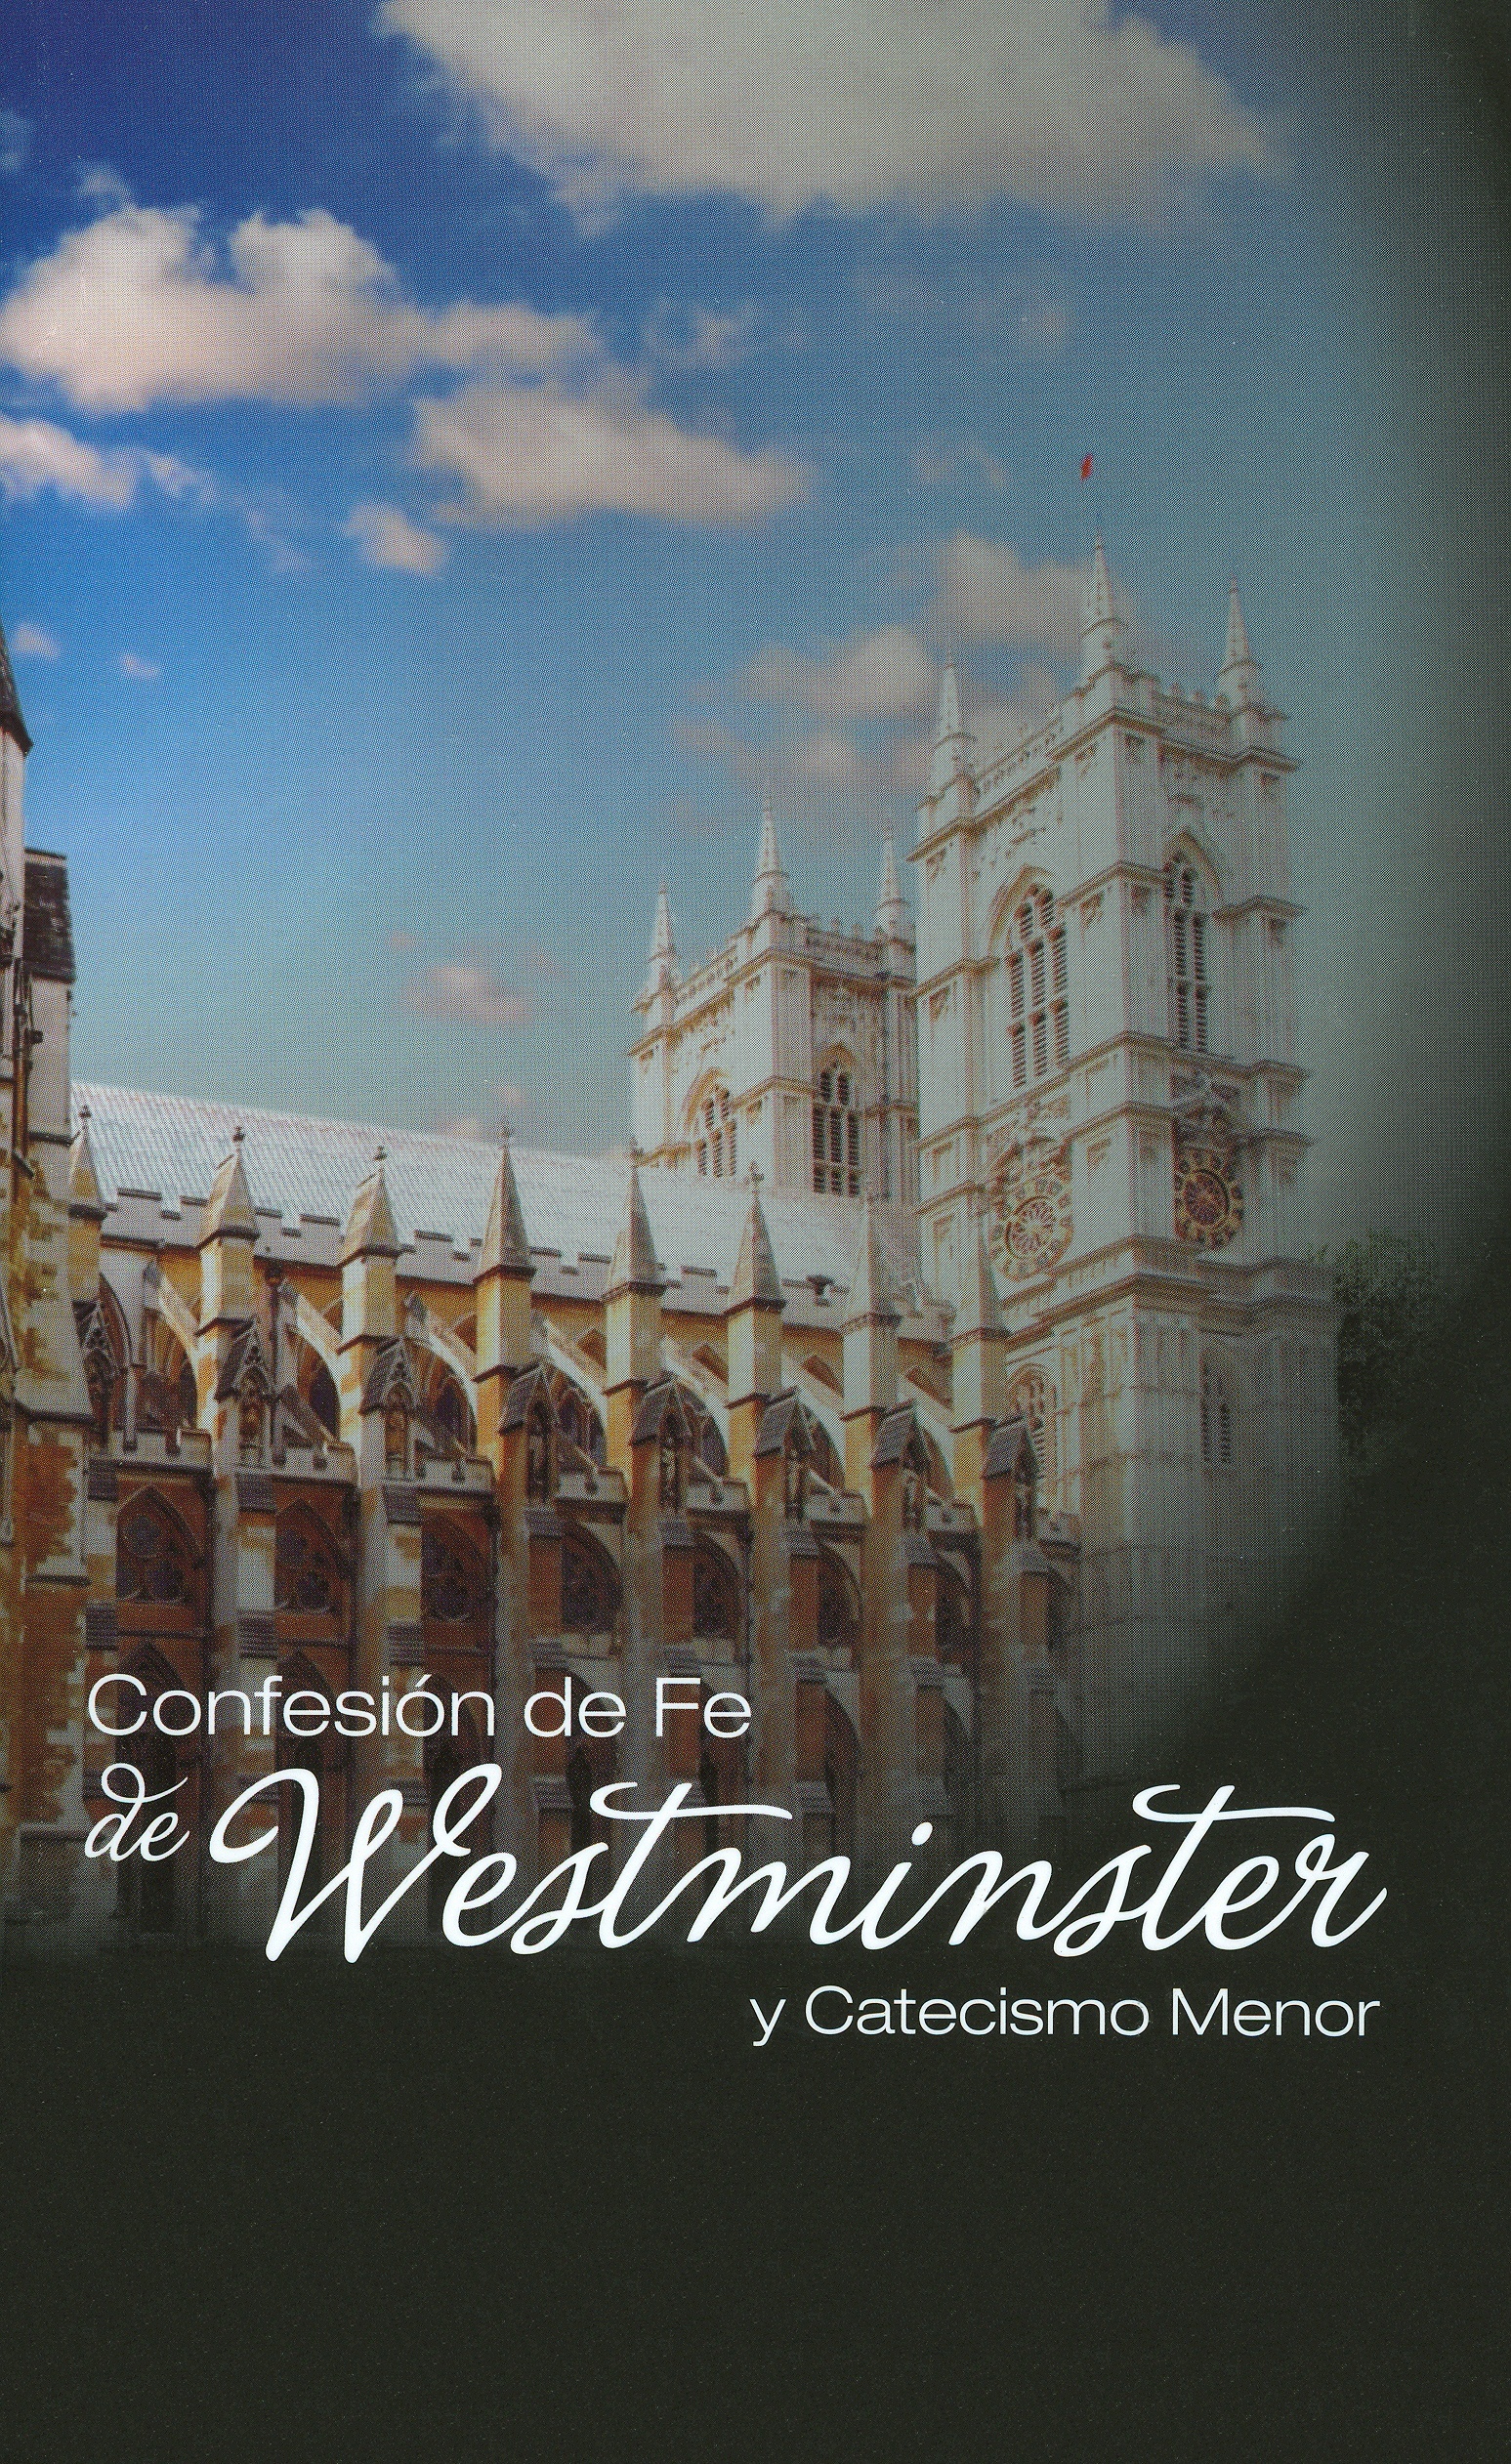 Book Cover For 'Confesion De Fe De Westminster'